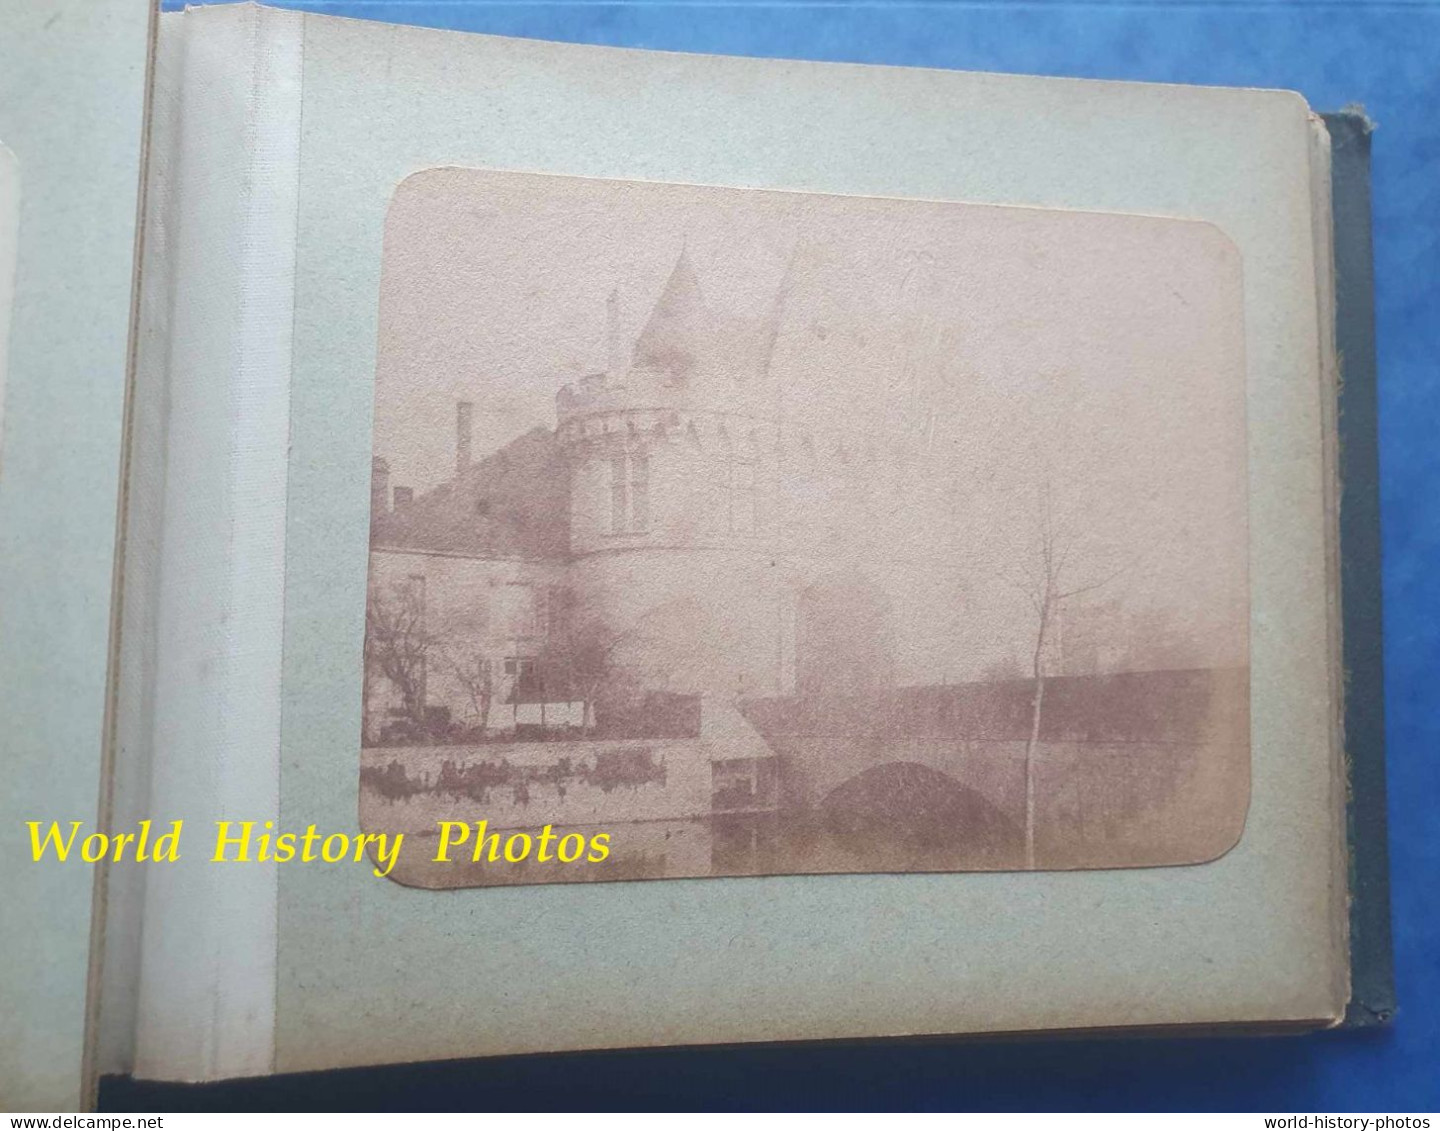 Album fin 19e - photographe à identifier - VENDOME et environs - Appareil Photo , Monument , Chateau - Papier salé ?